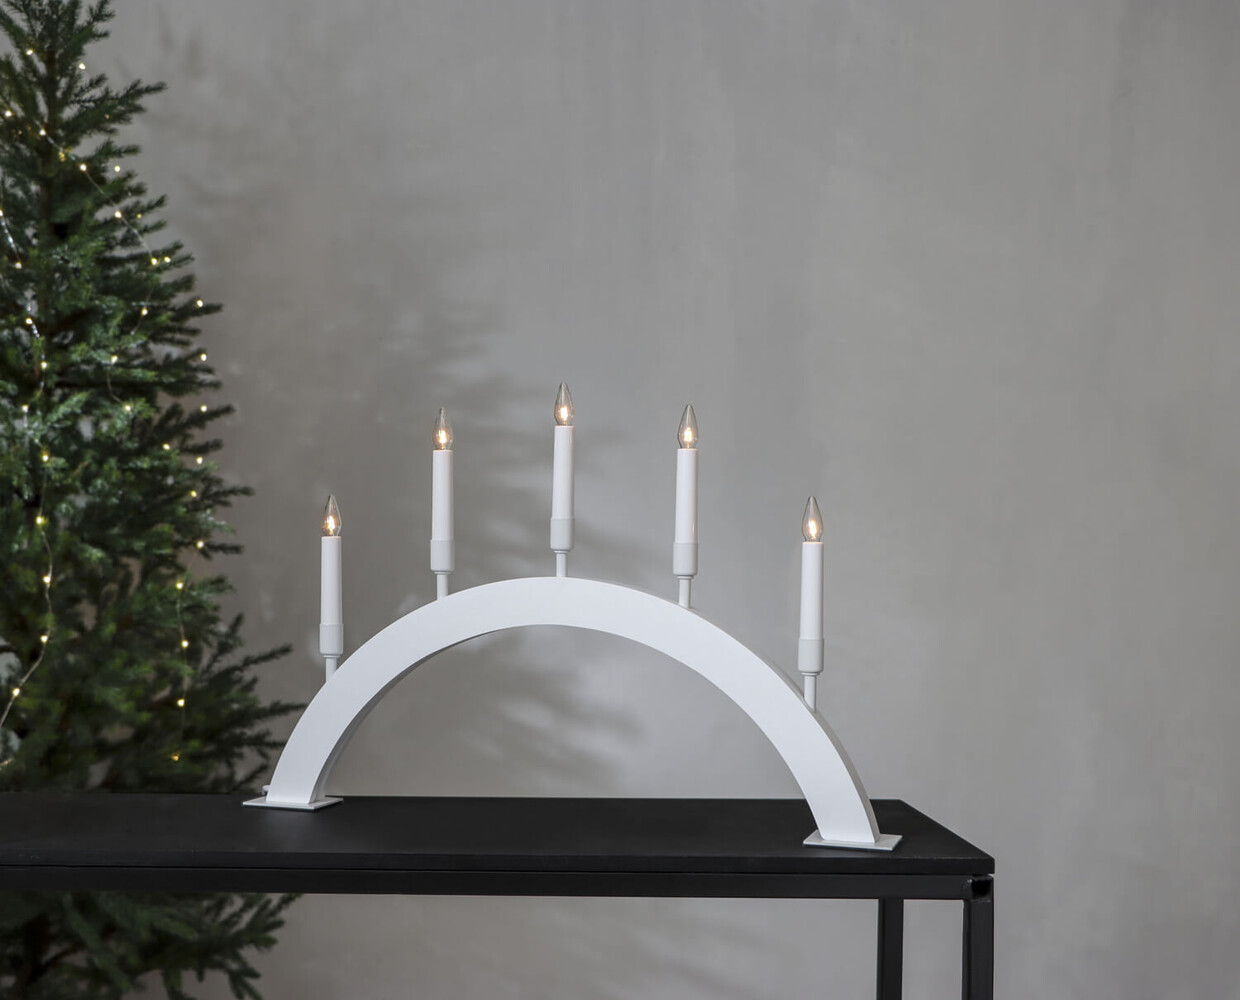 Fünfflammiger Holz-Leuchter von Star Trading in elegantem Weiß und warmweißem Licht